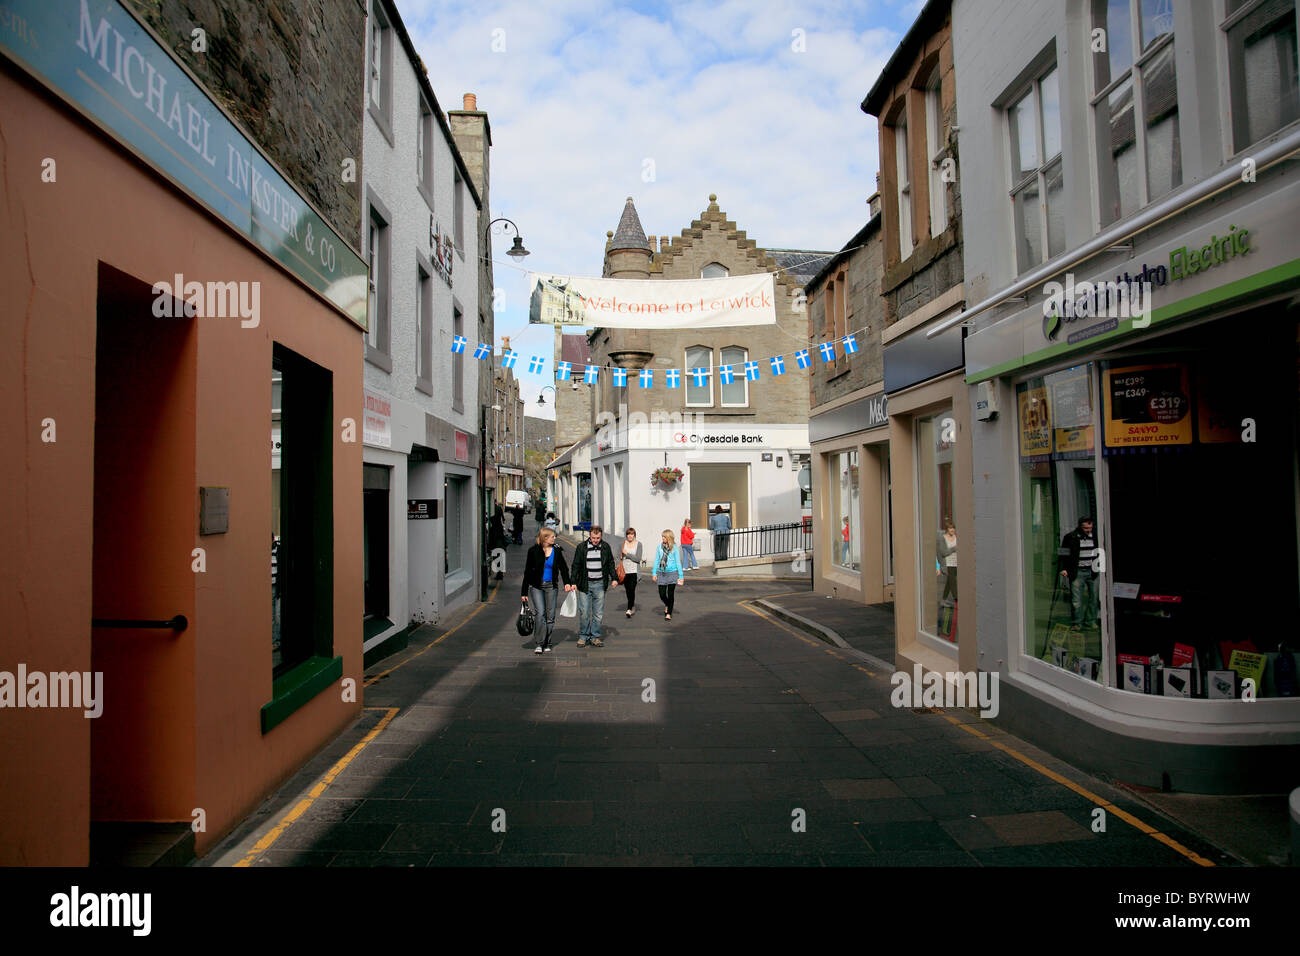 Commercial Street, la principale rue commerçante à Lerwick, les îles Shetland. Les voitures doivent rouler lentement et soigneusement Banque D'Images